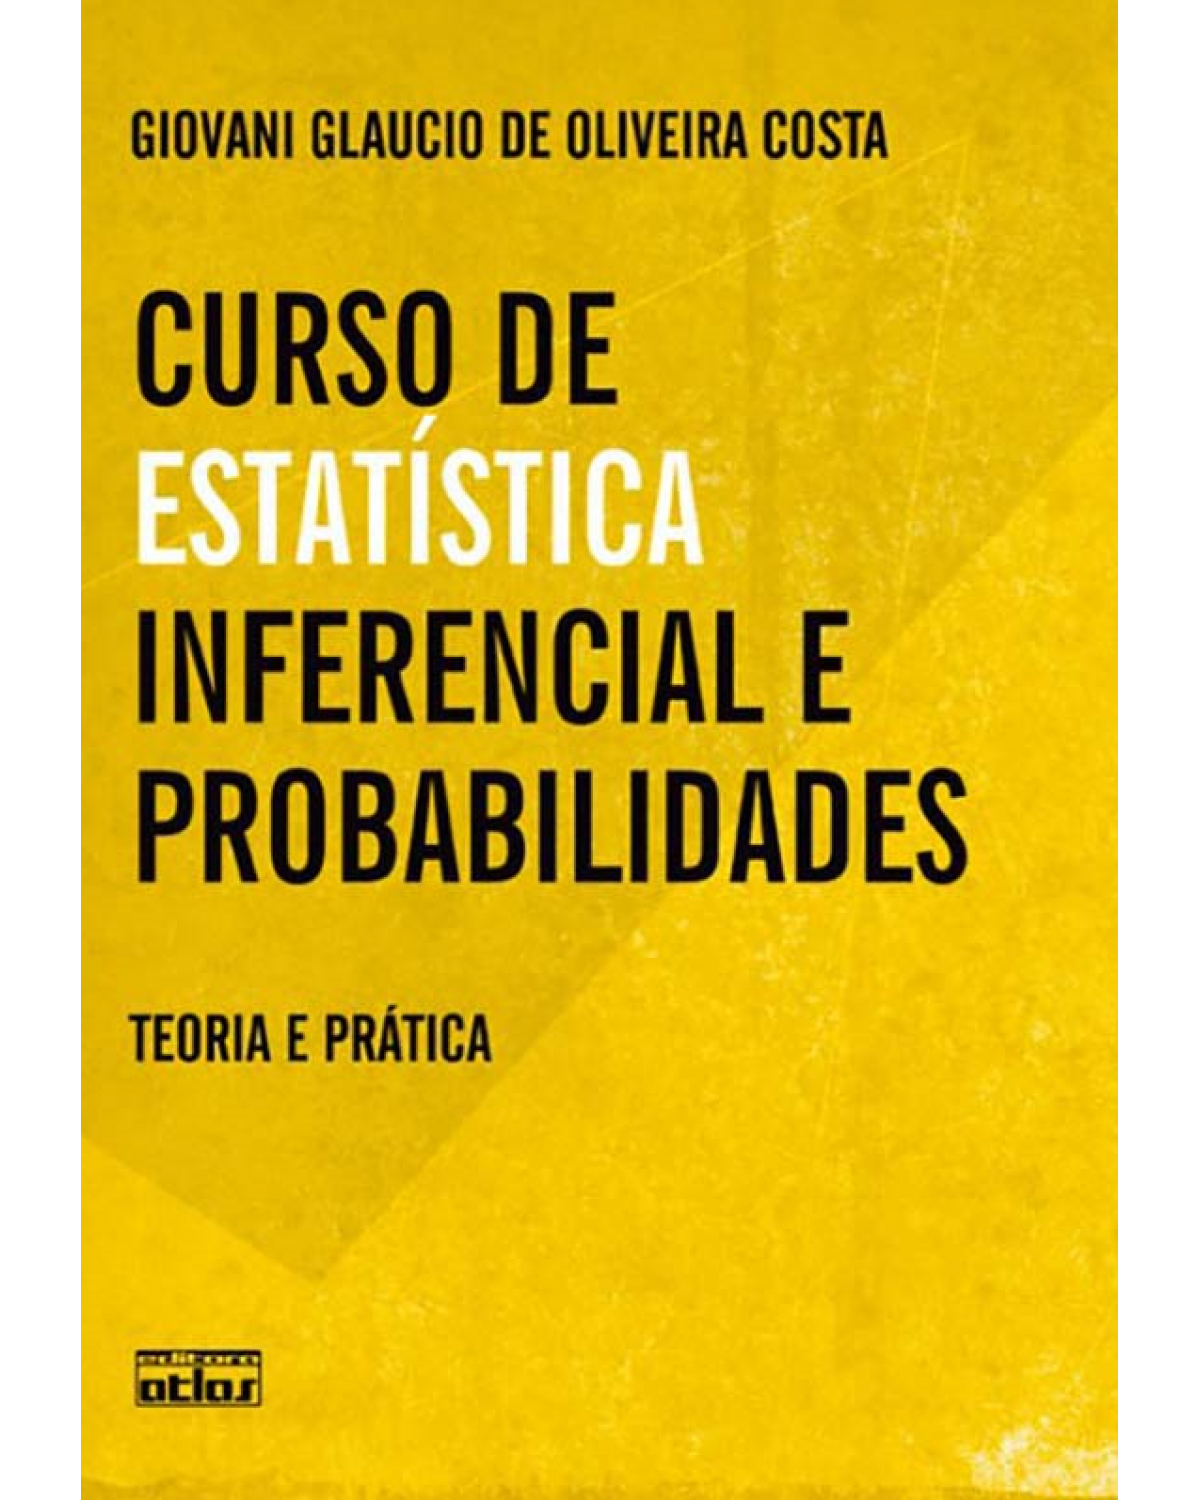 Curso de estatística inferencial e probabilidades - Teoria e prática - 1ª Edição | 2012